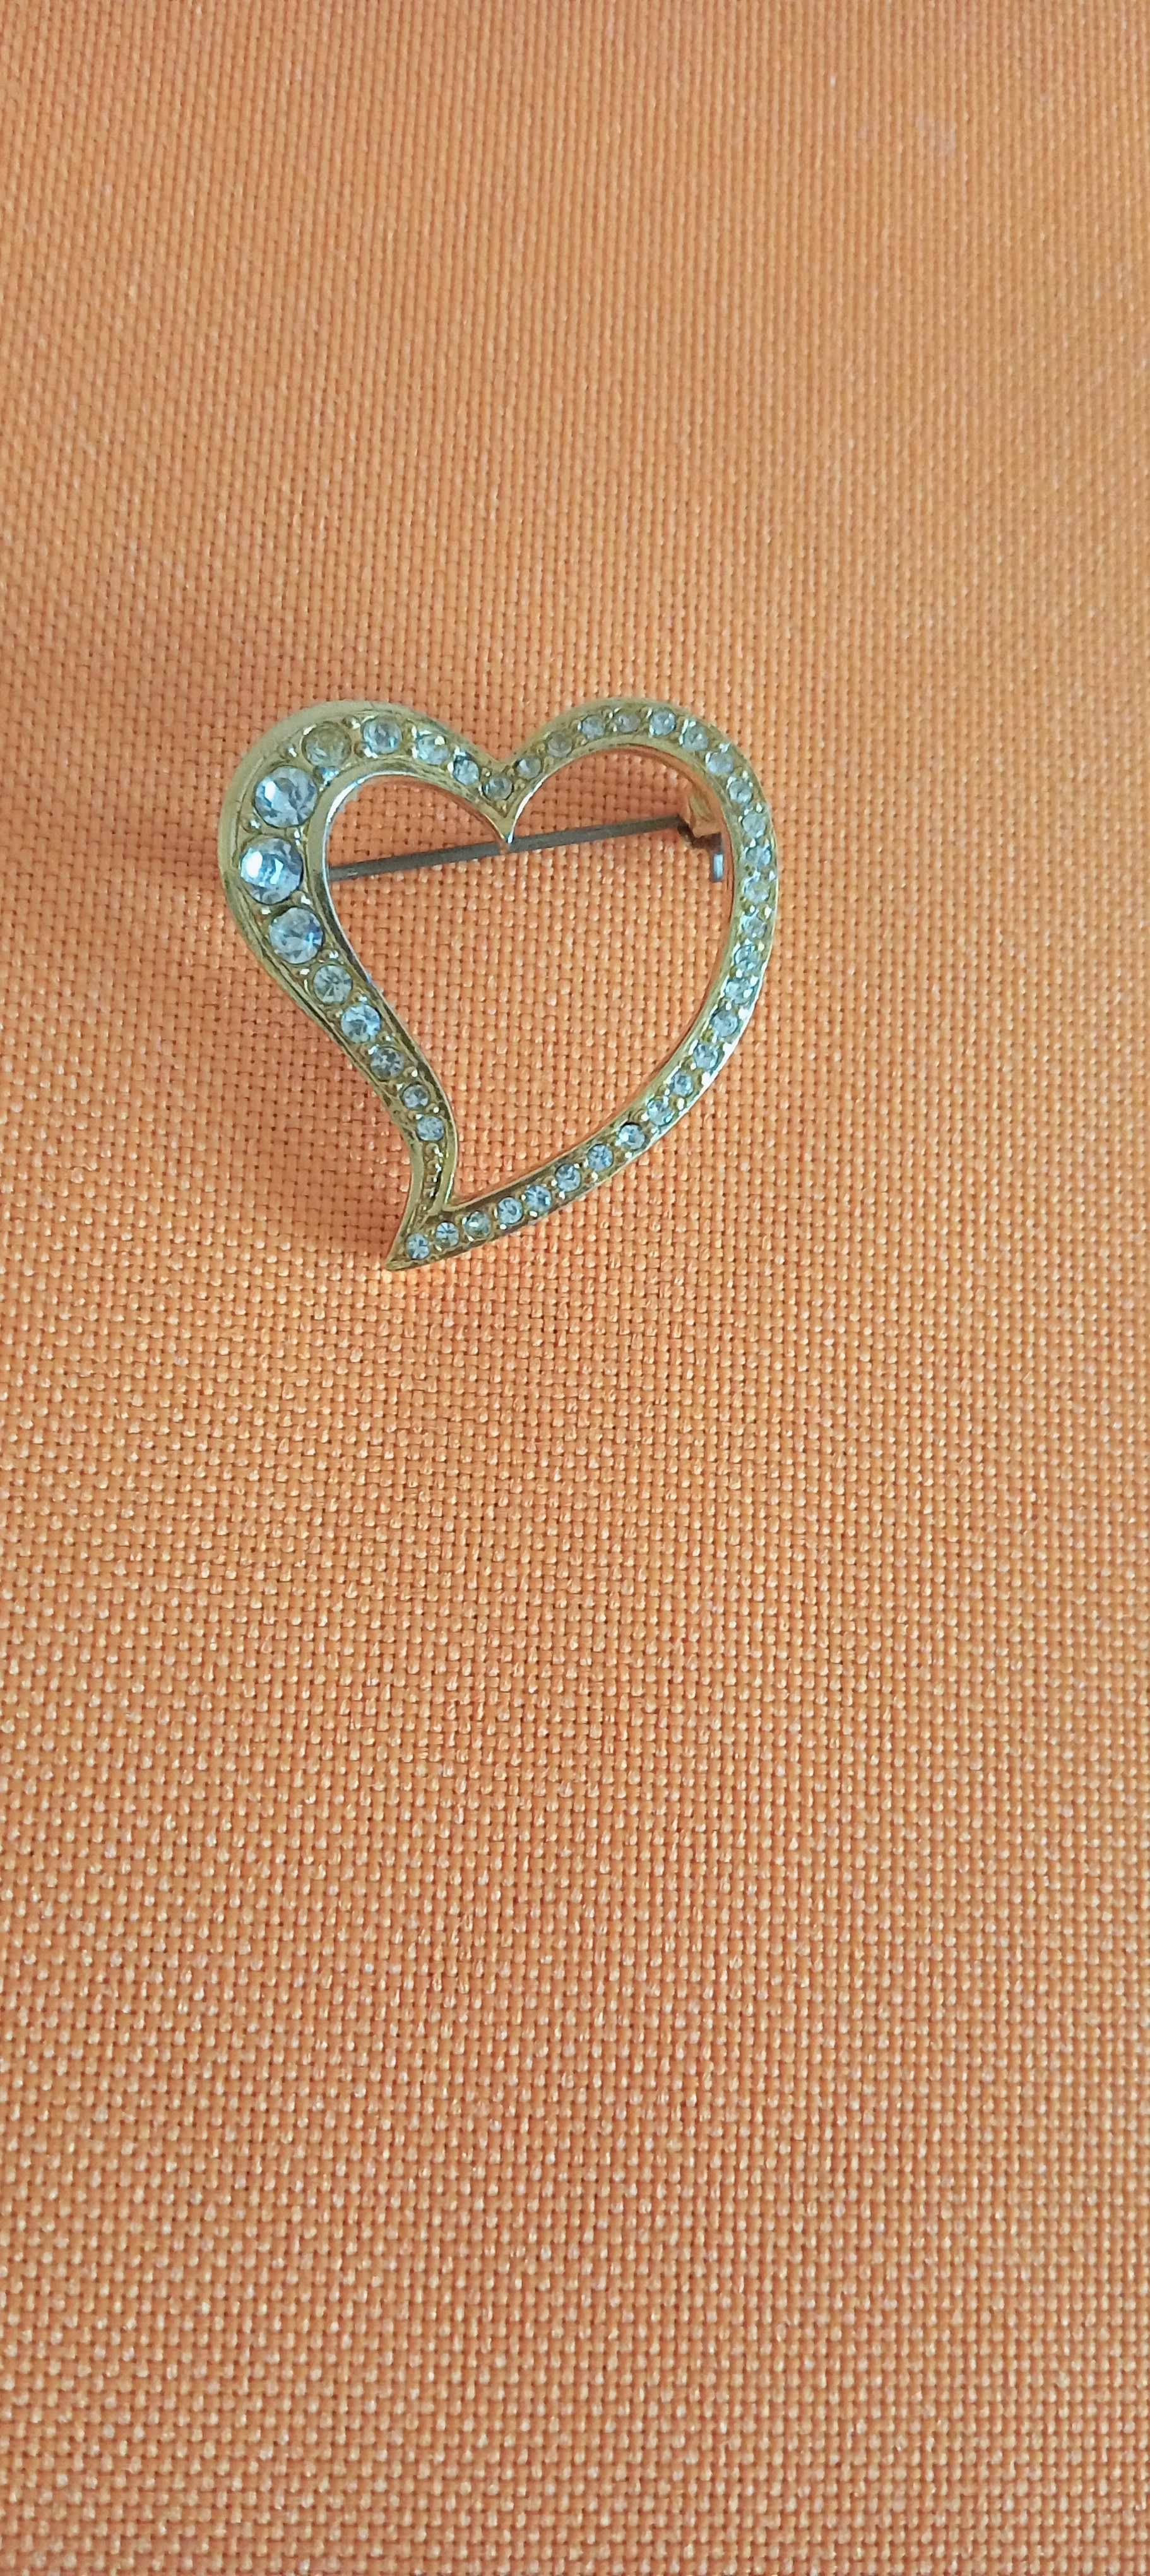 Broszka w kształcie serca z kryształami.